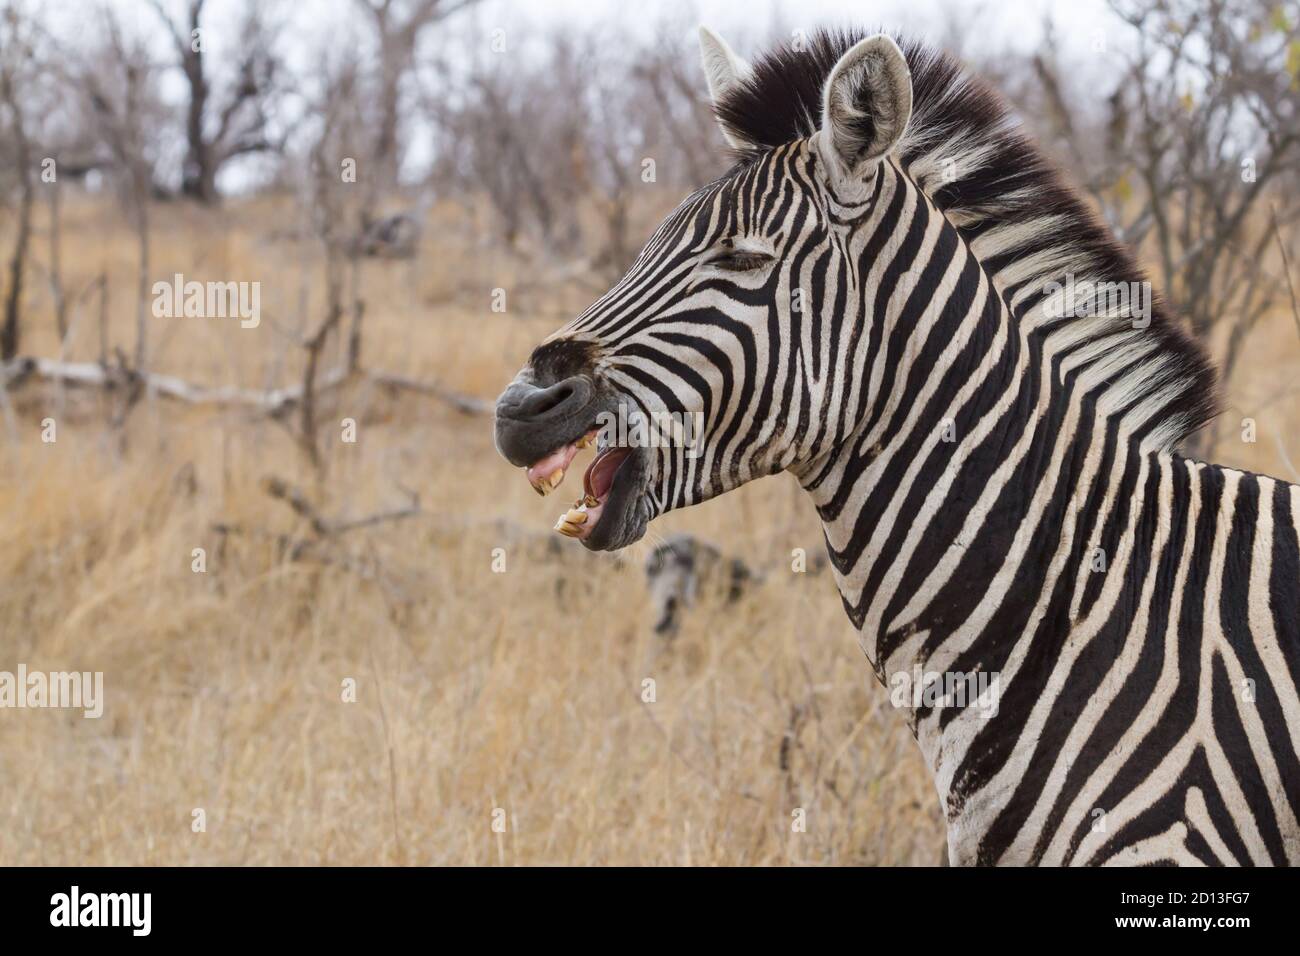 Portrait de la tête de Zebra de près avec la bouche ouverte montrant les dents pourries avec le fond bokeh dans le parc national Kruger, Afrique du Sud Banque D'Images